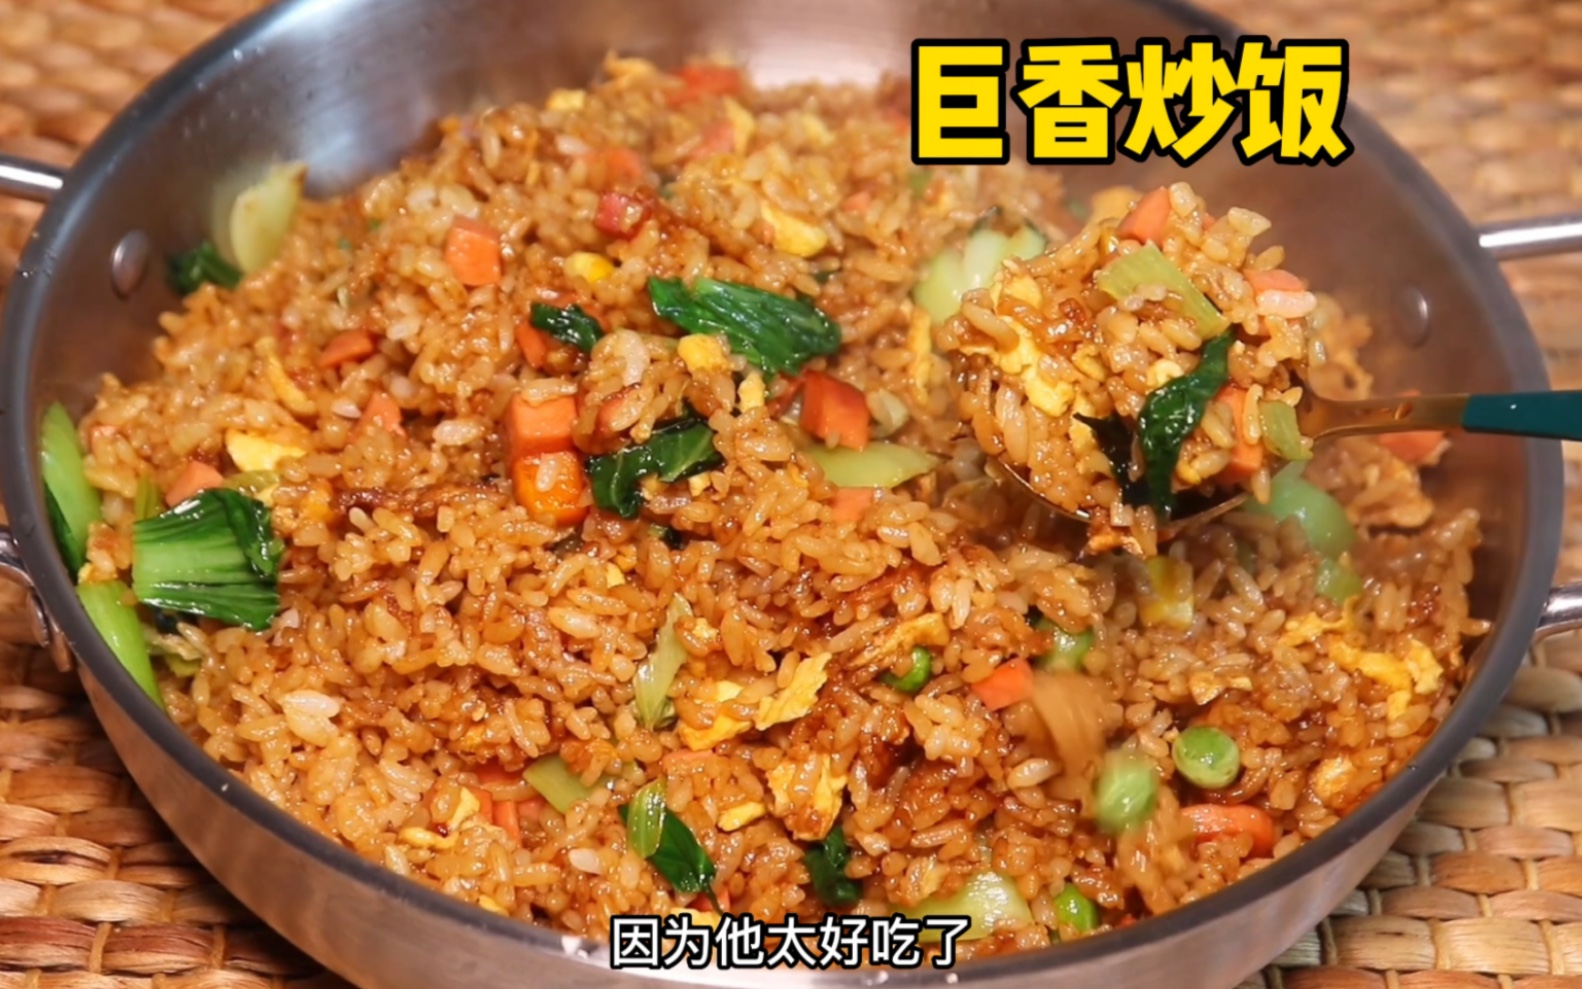 西蘭花沙葛肉碎粟米甘筍粒粒炒食譜、做法 | YeungMa的Cook1Cook食譜分享